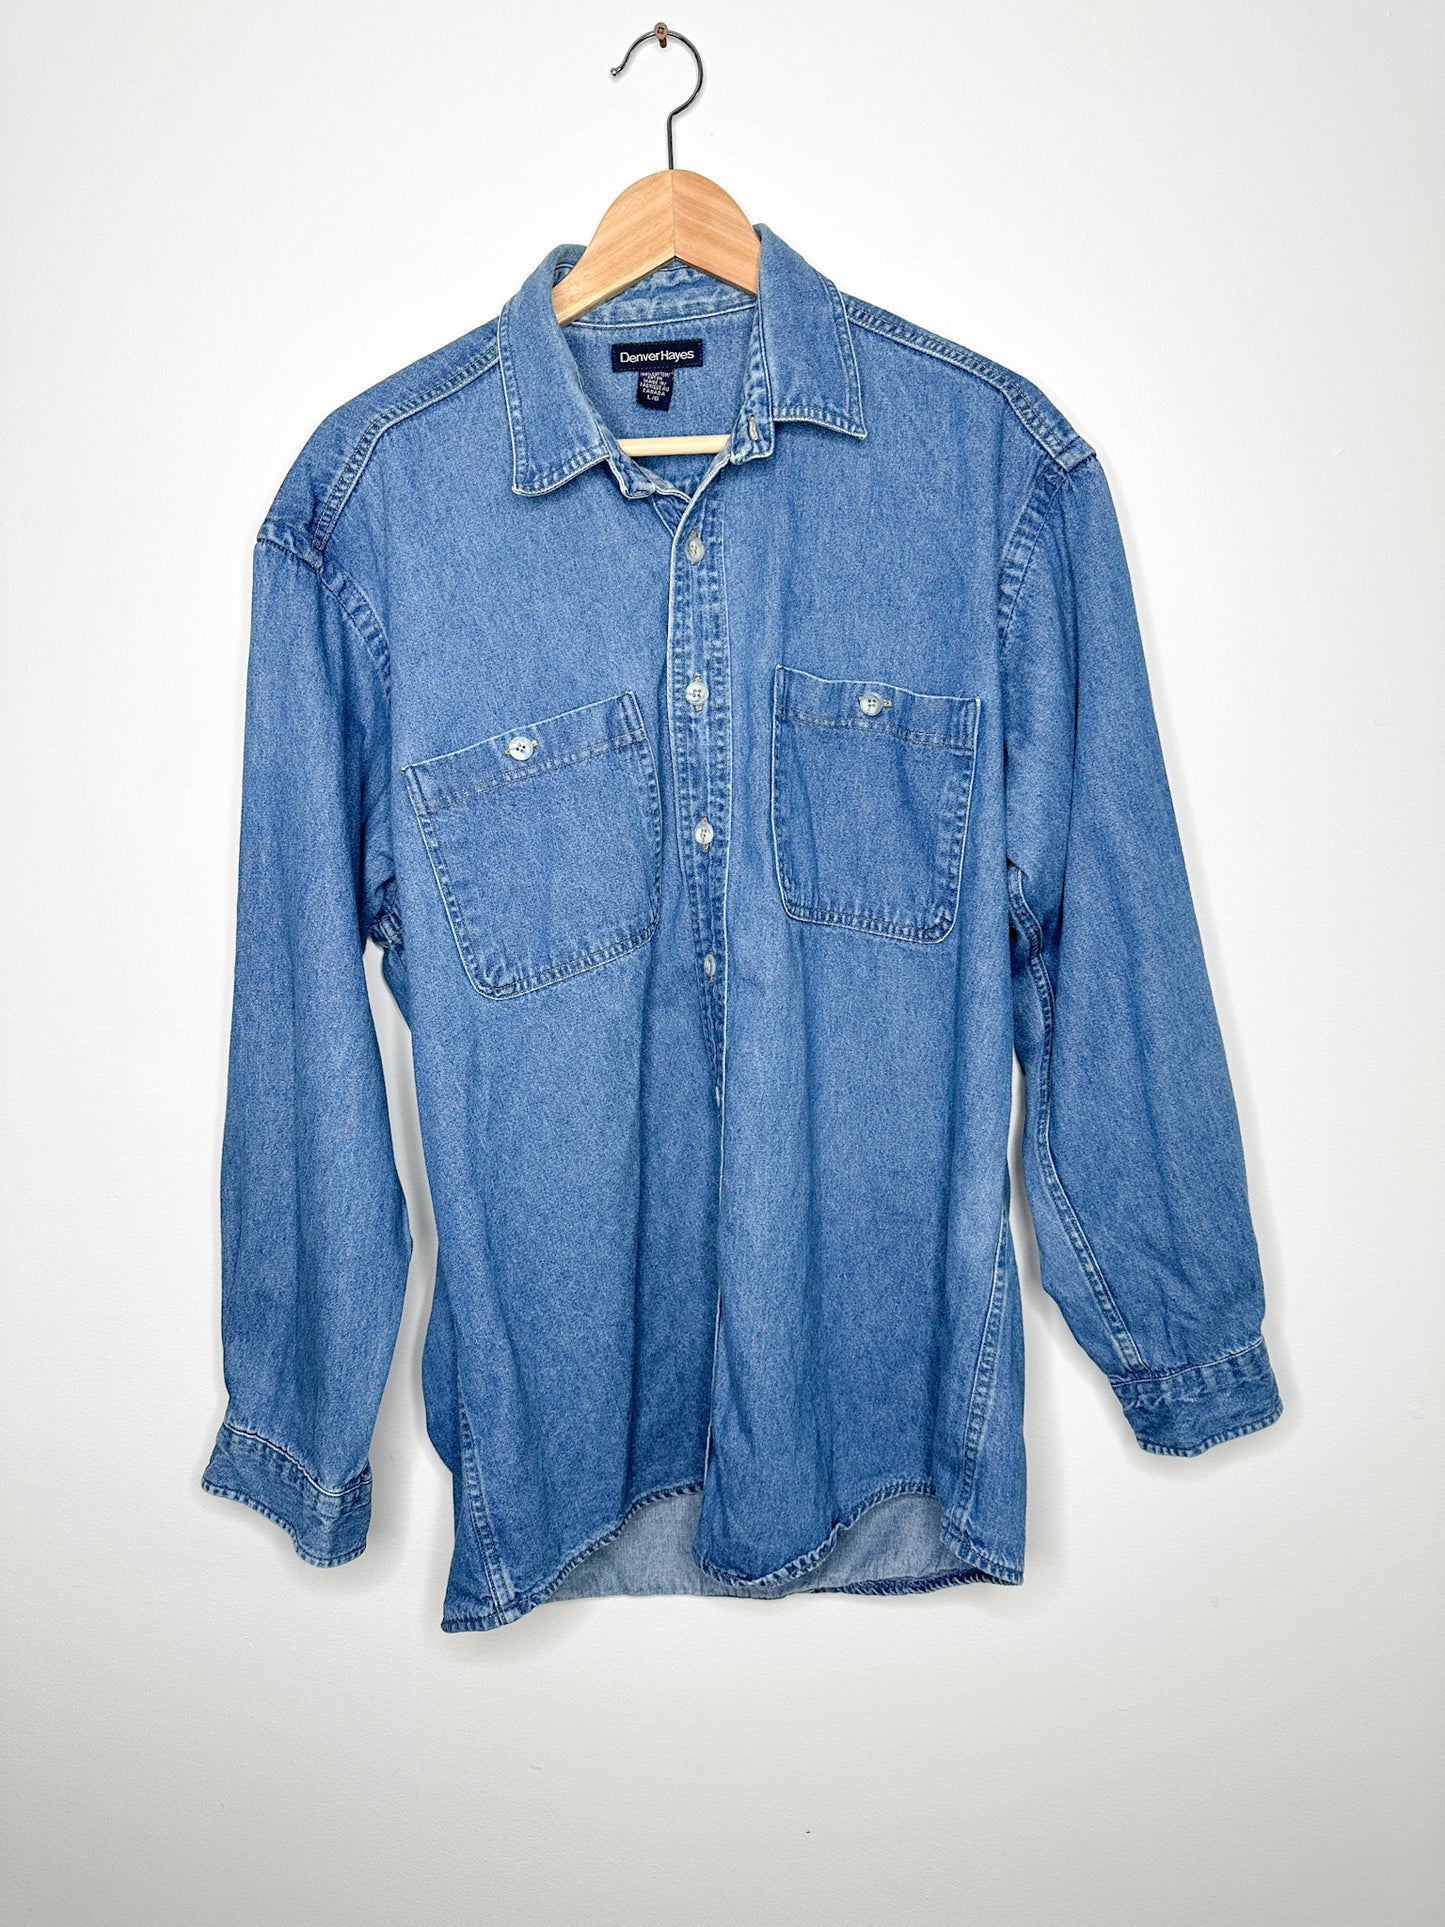 Vintage Denver Hayes Denim Jacket | Size Large